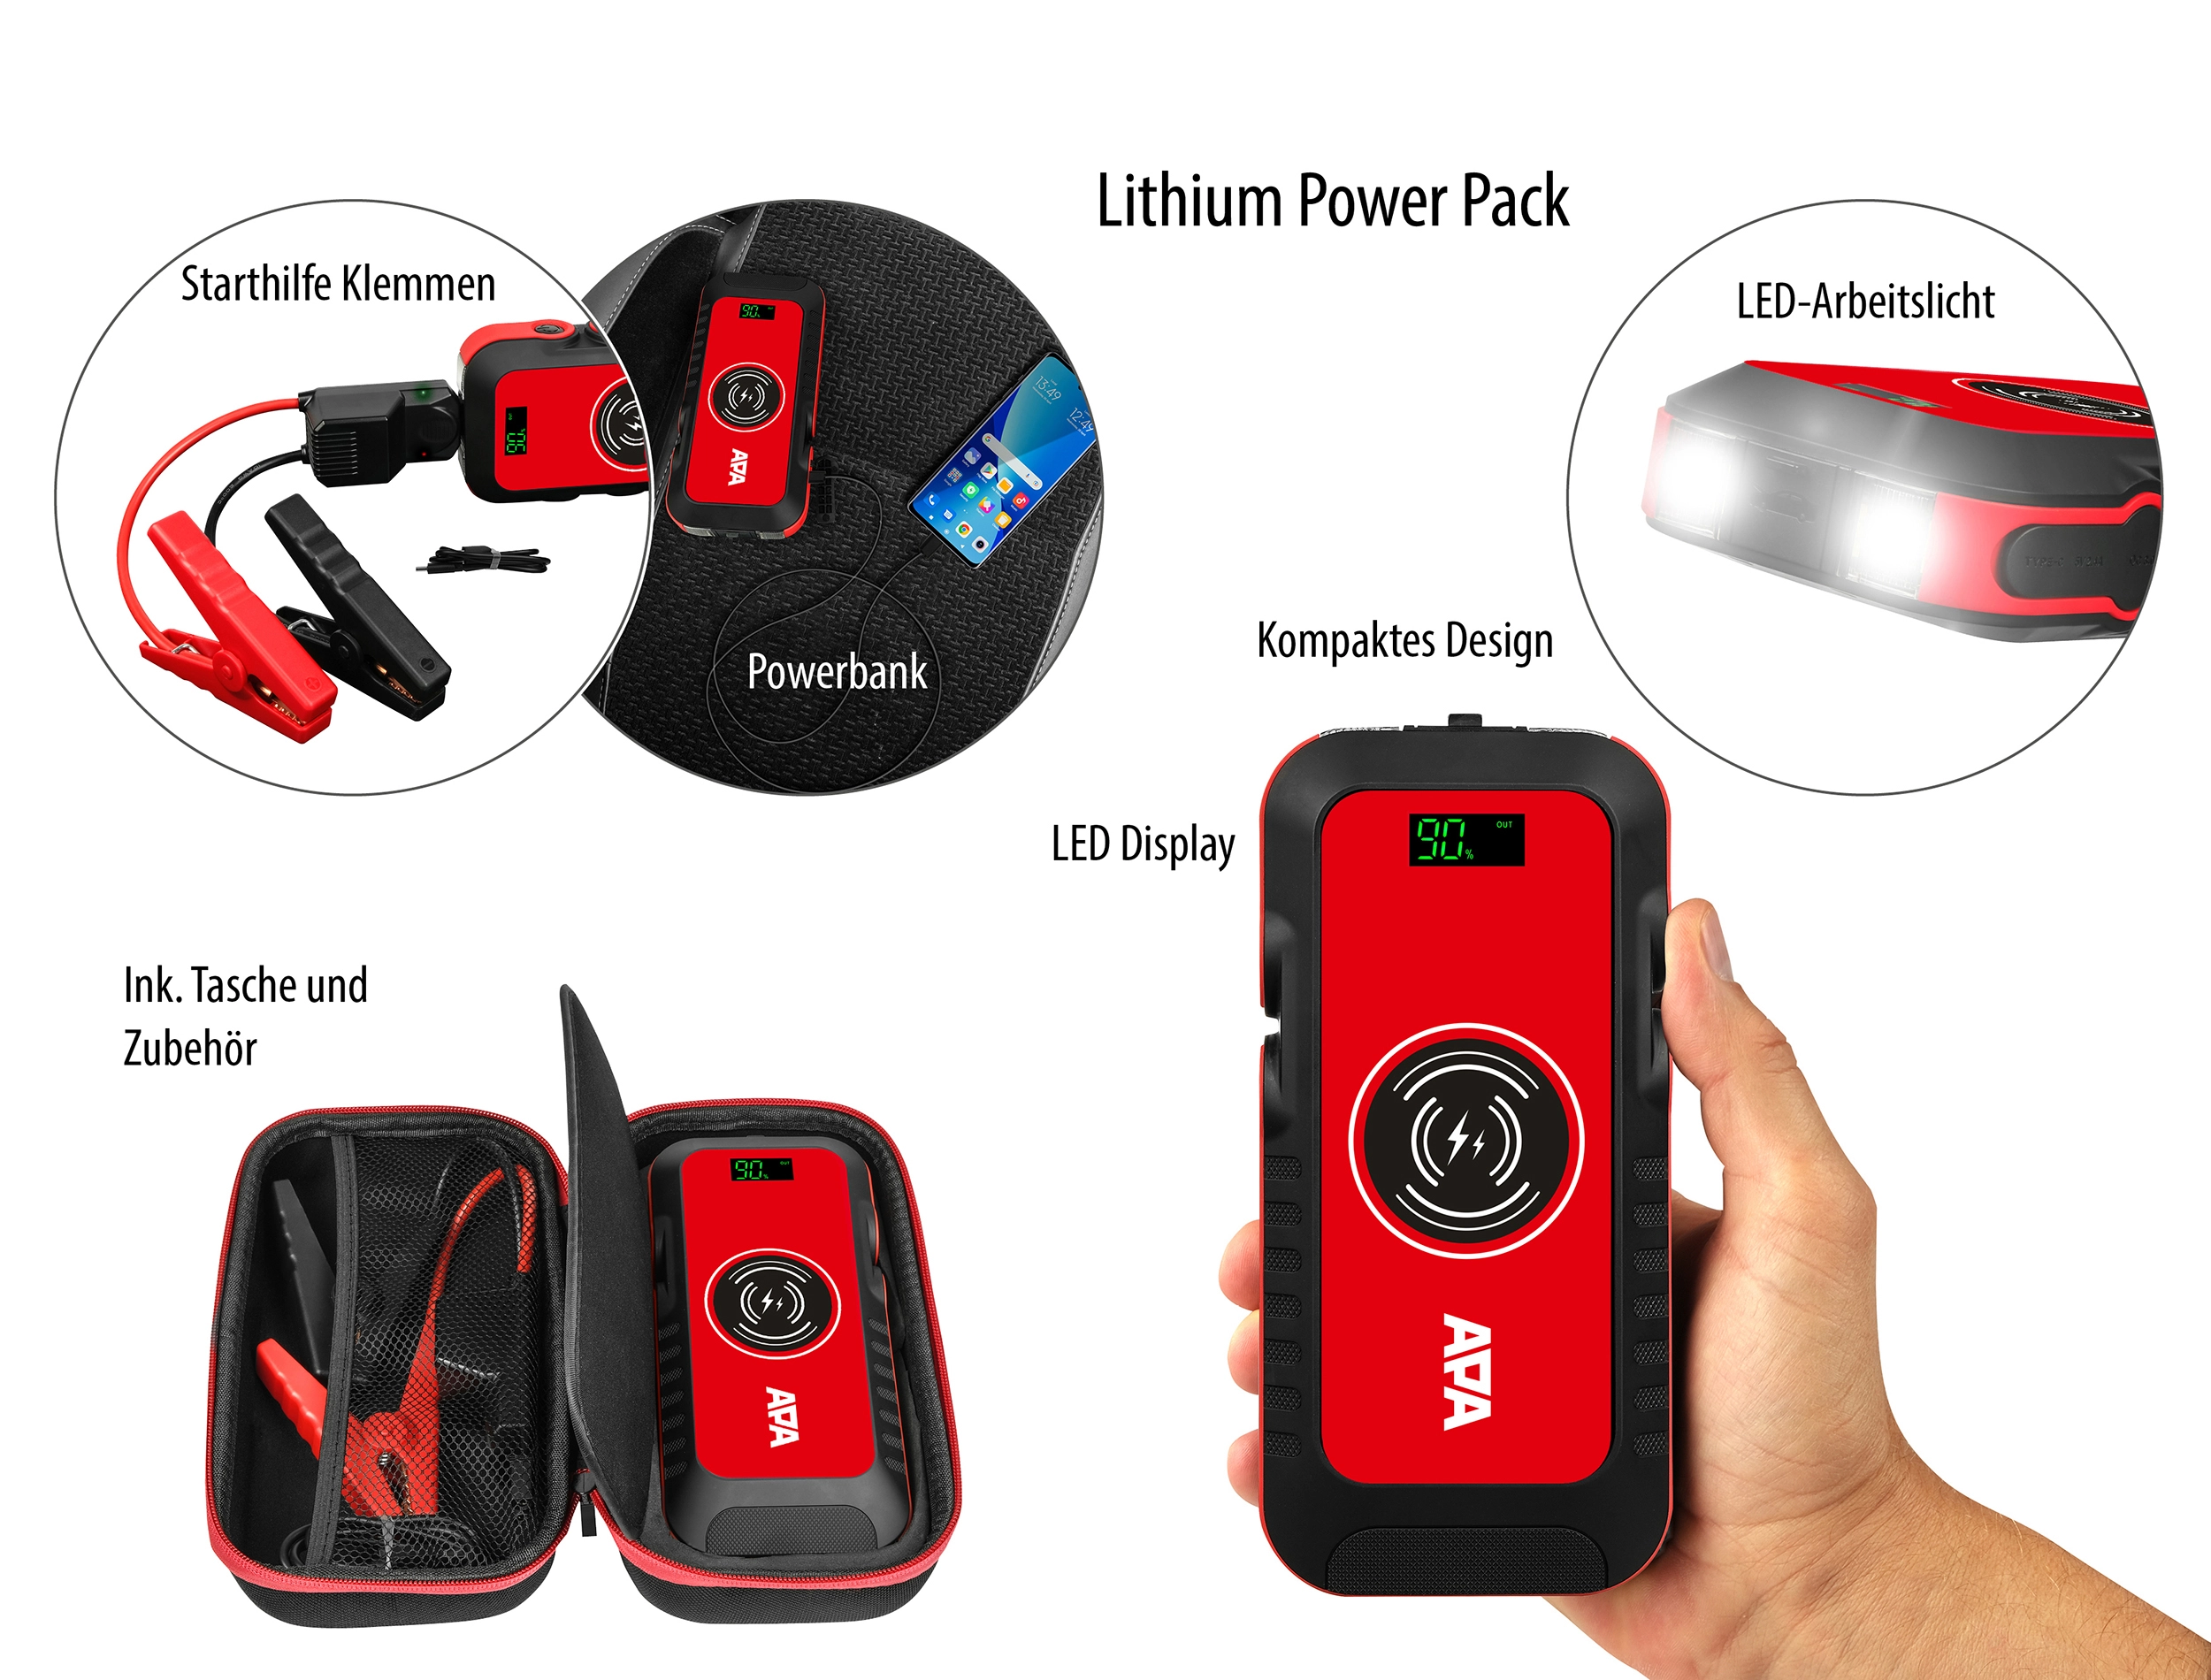 Apa Schnellstartsystem Lithium Powerpack 16.000 mAh Rot kaufen bei OBI